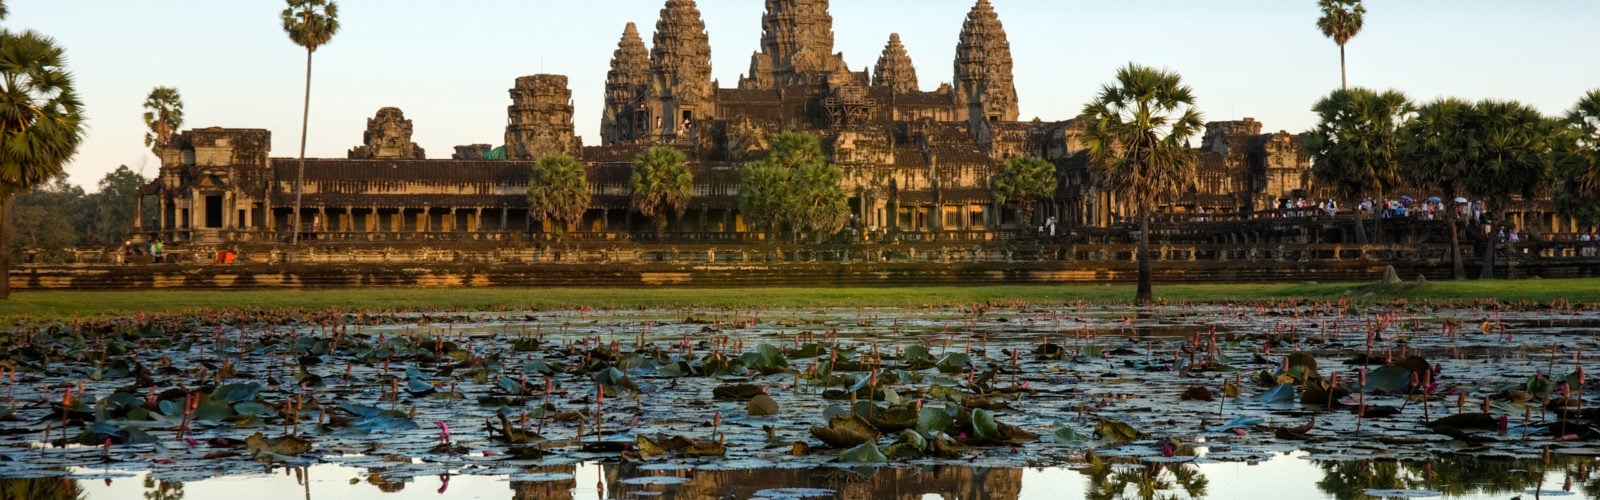 indochina travel land